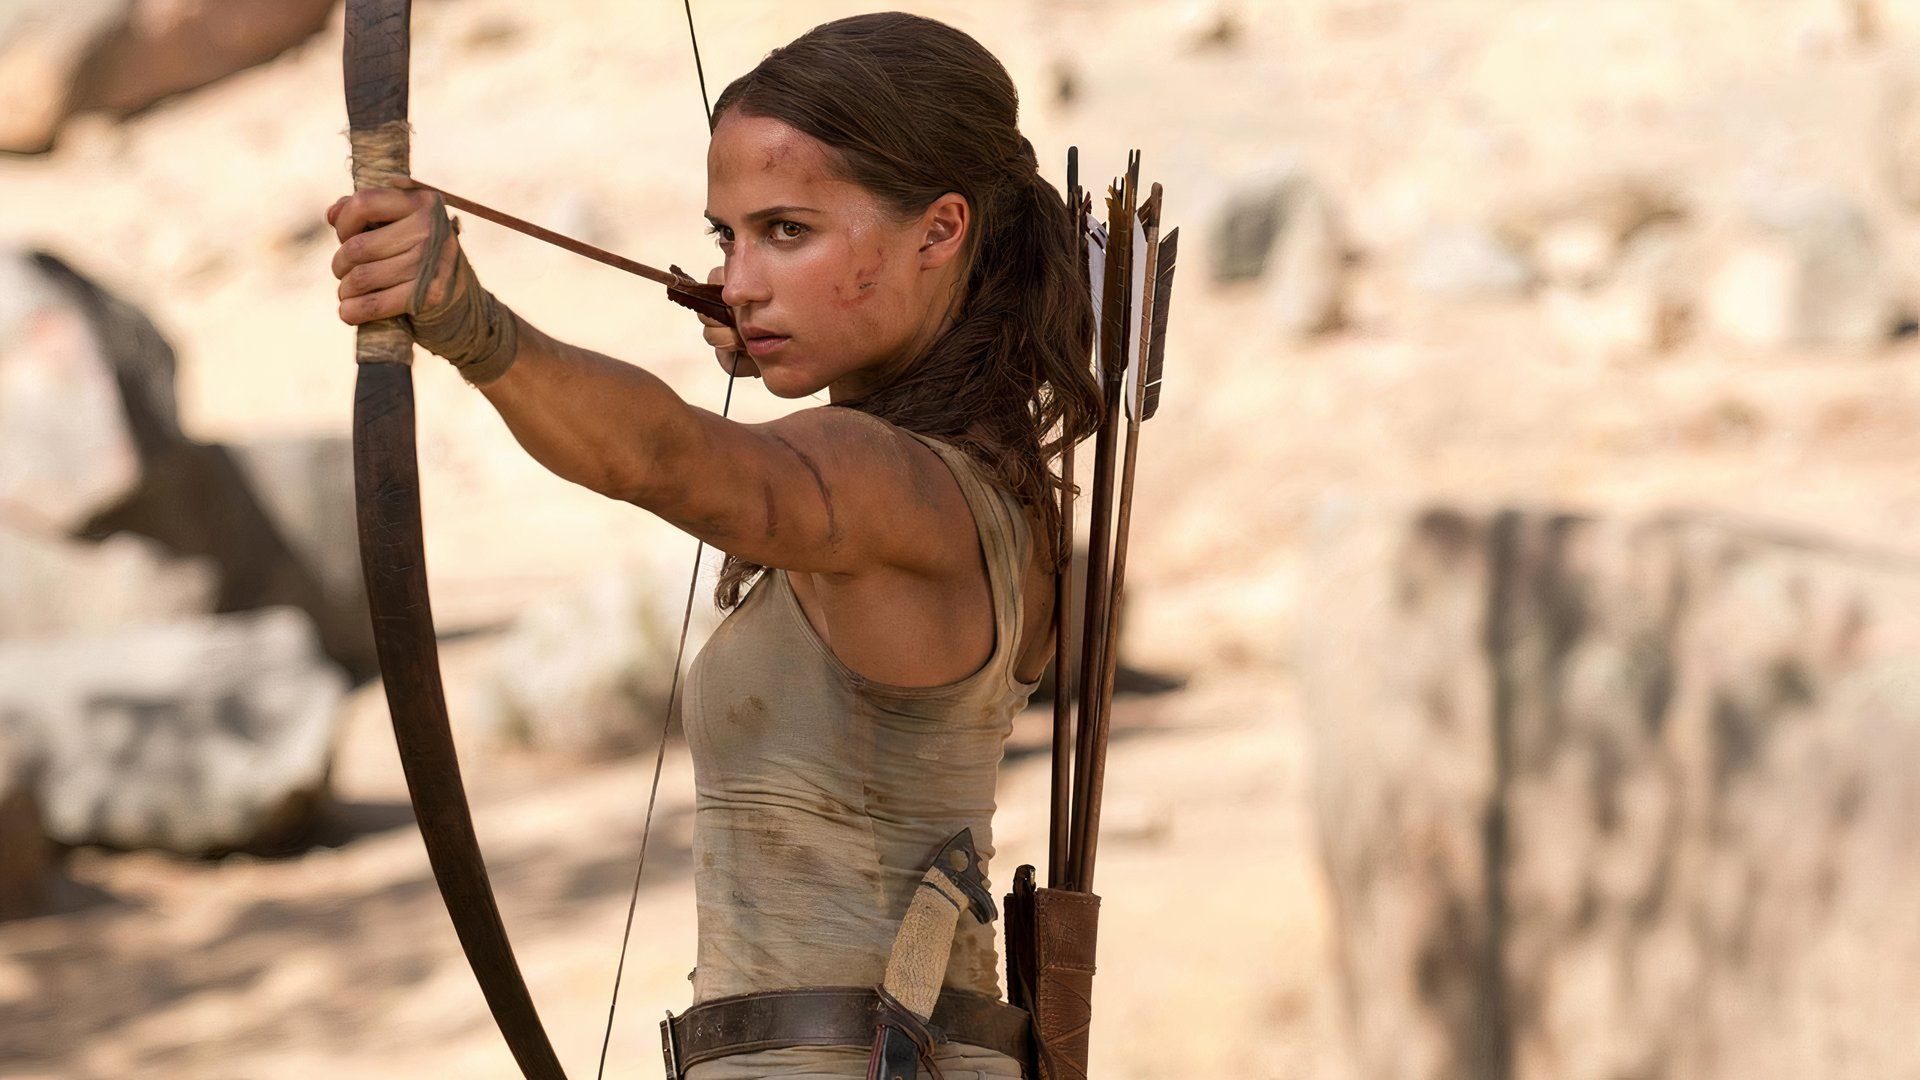 Lara aims an arrow in Tomb Raider